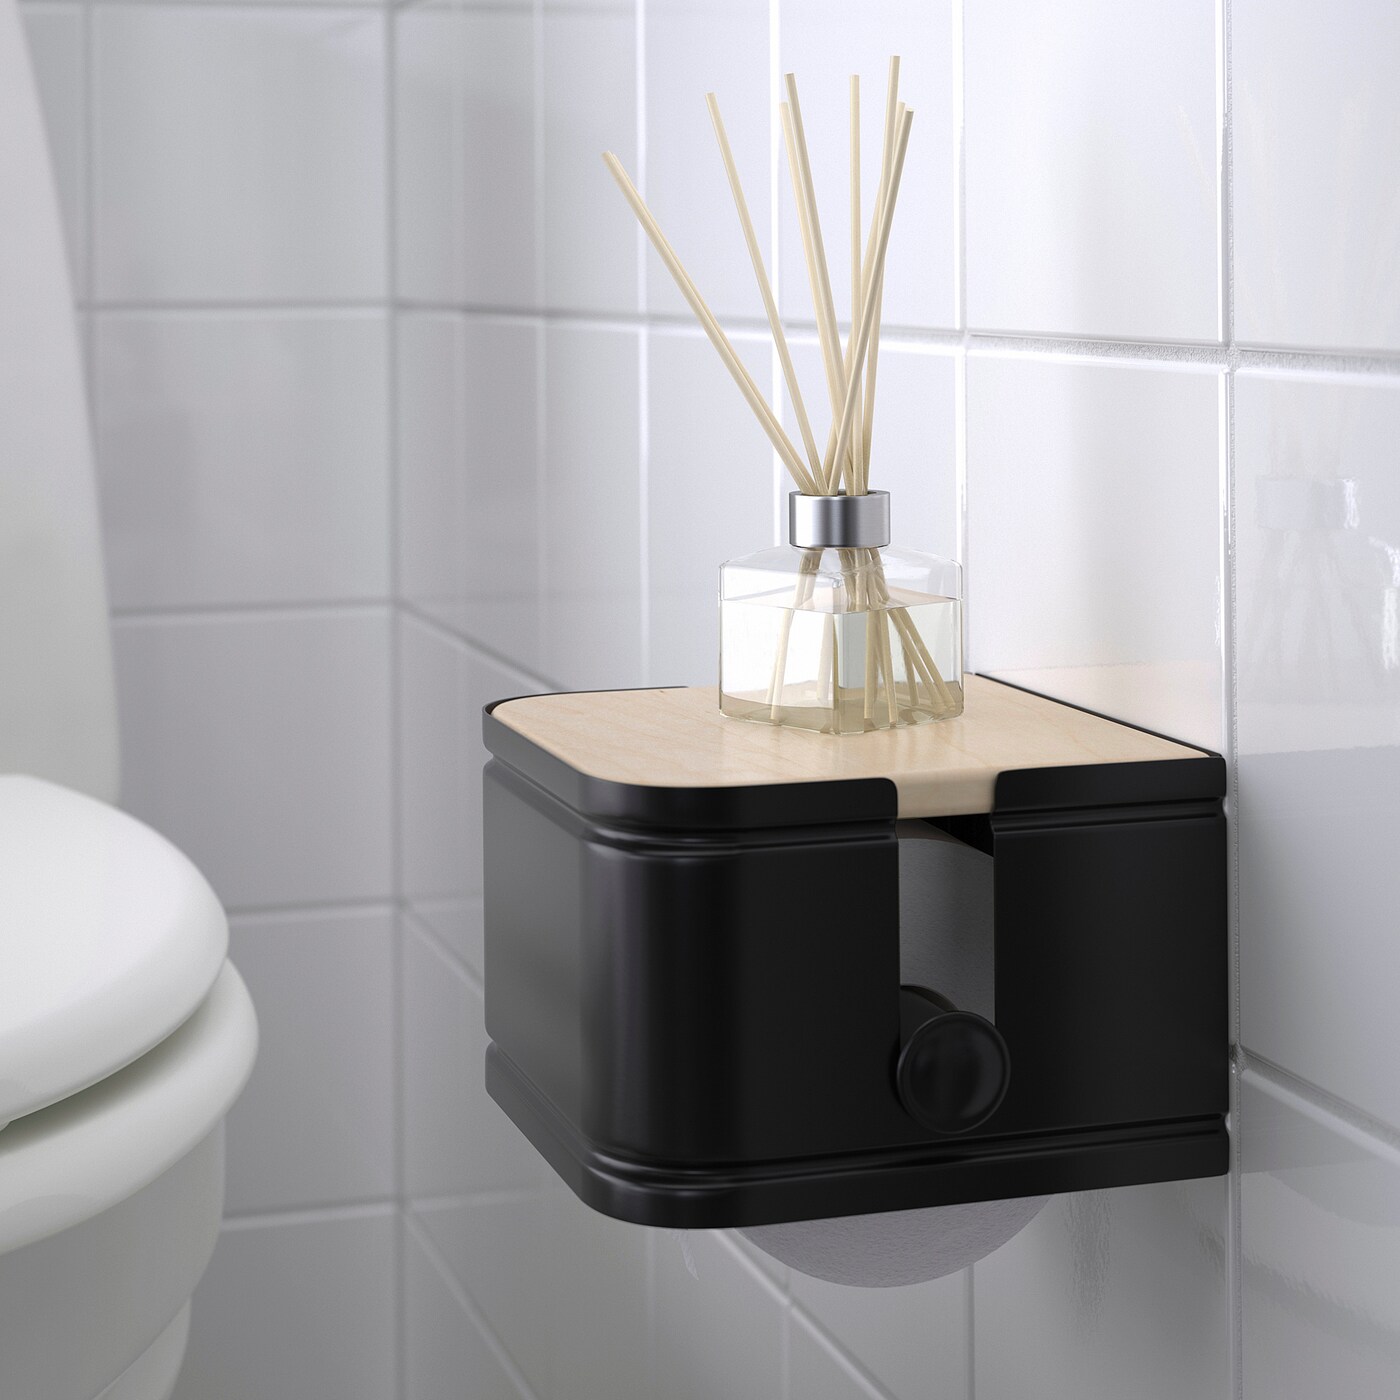 LILLASJÖN toilet roll holder - IKEA